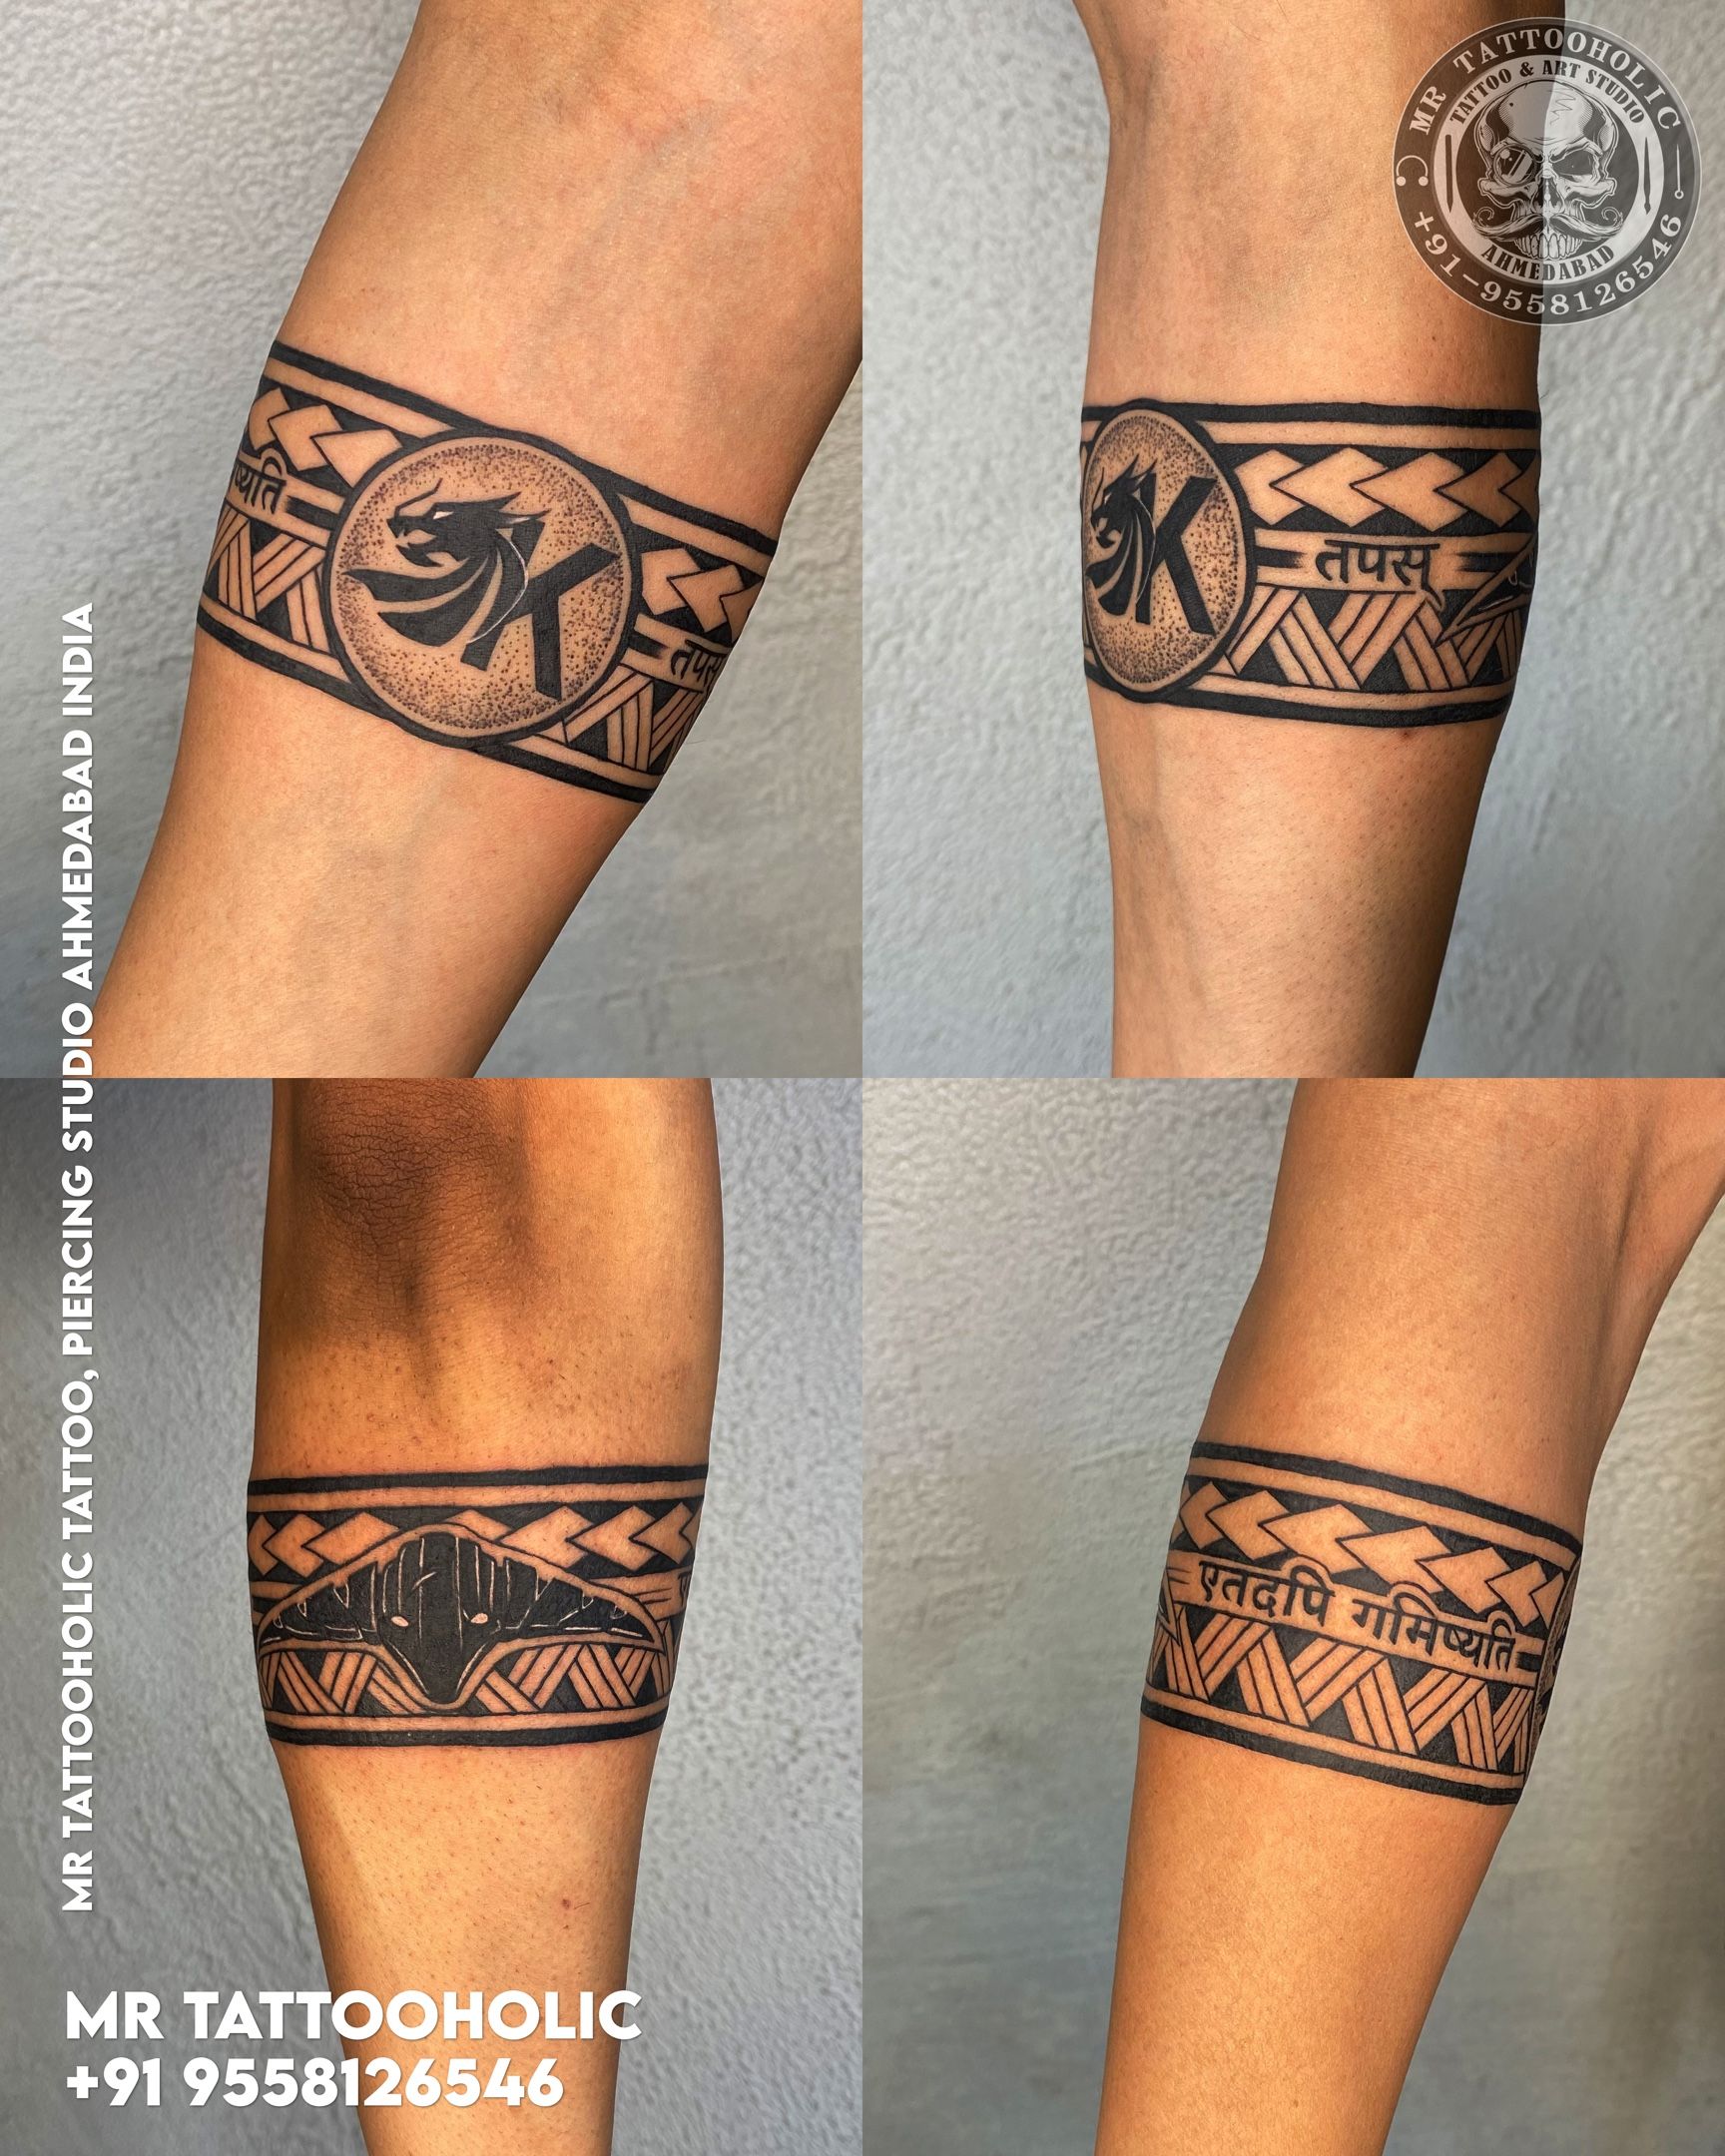 Virat Kohli new tattoo design meaning | विराट कोहली के नए टैटू का मतलब  आर्टिस्ट ने बताया: कहा - विराट चाहते थे कि आध्यात्मिकता से जुड़ा हो टैटू,  18 घंटे में पूरा